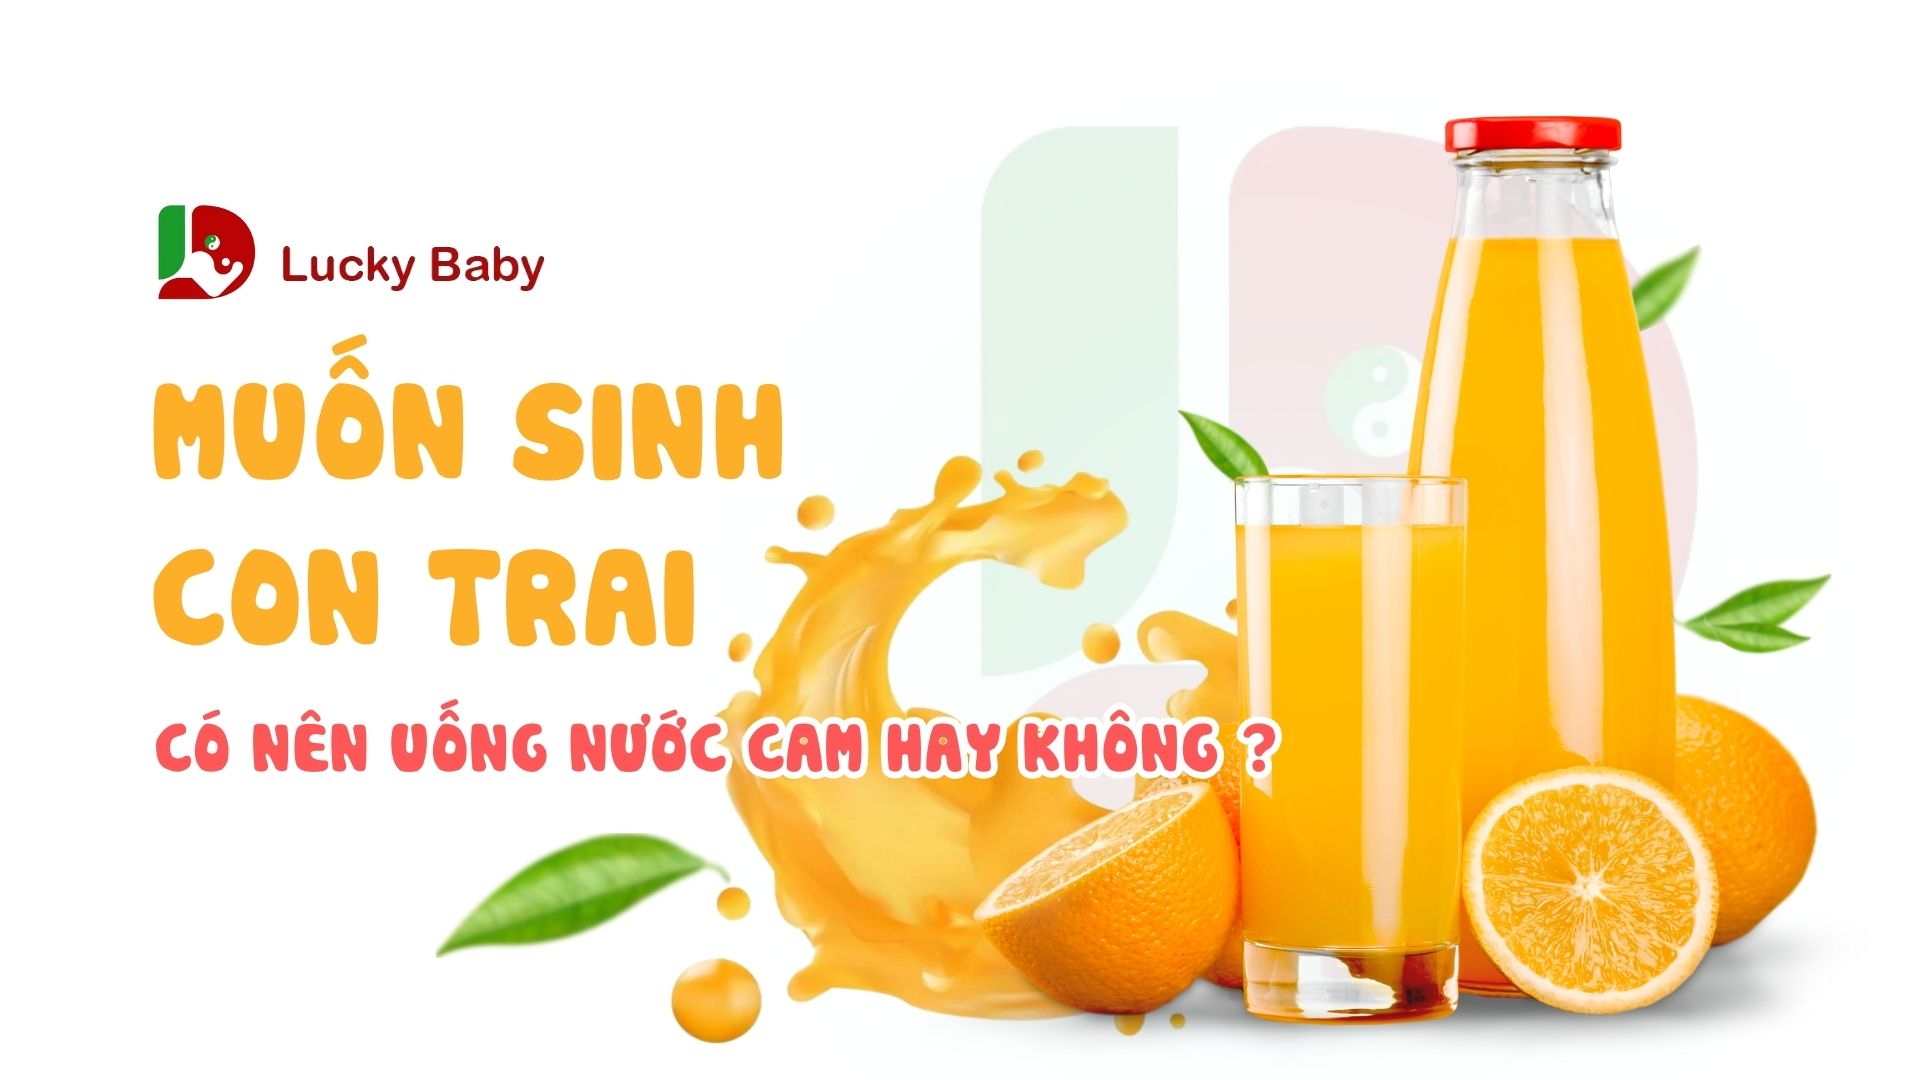 Muốn sinh con trai nên uống nước cam không?